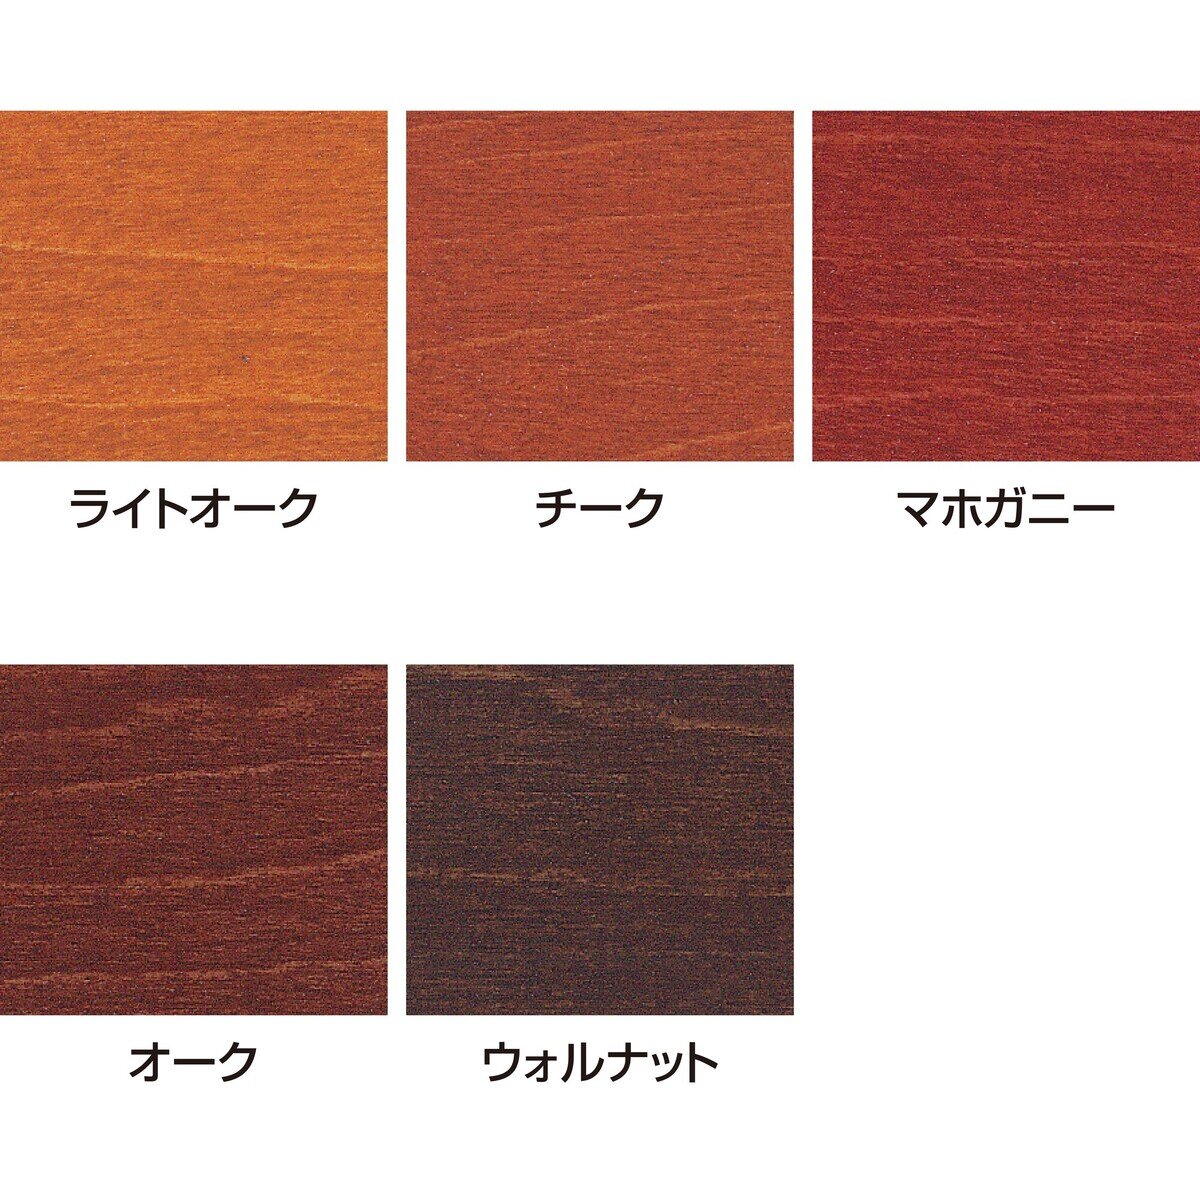 サンデーペイント 油性木部用塗料 カラーステイン 14L オーク Costco Japan